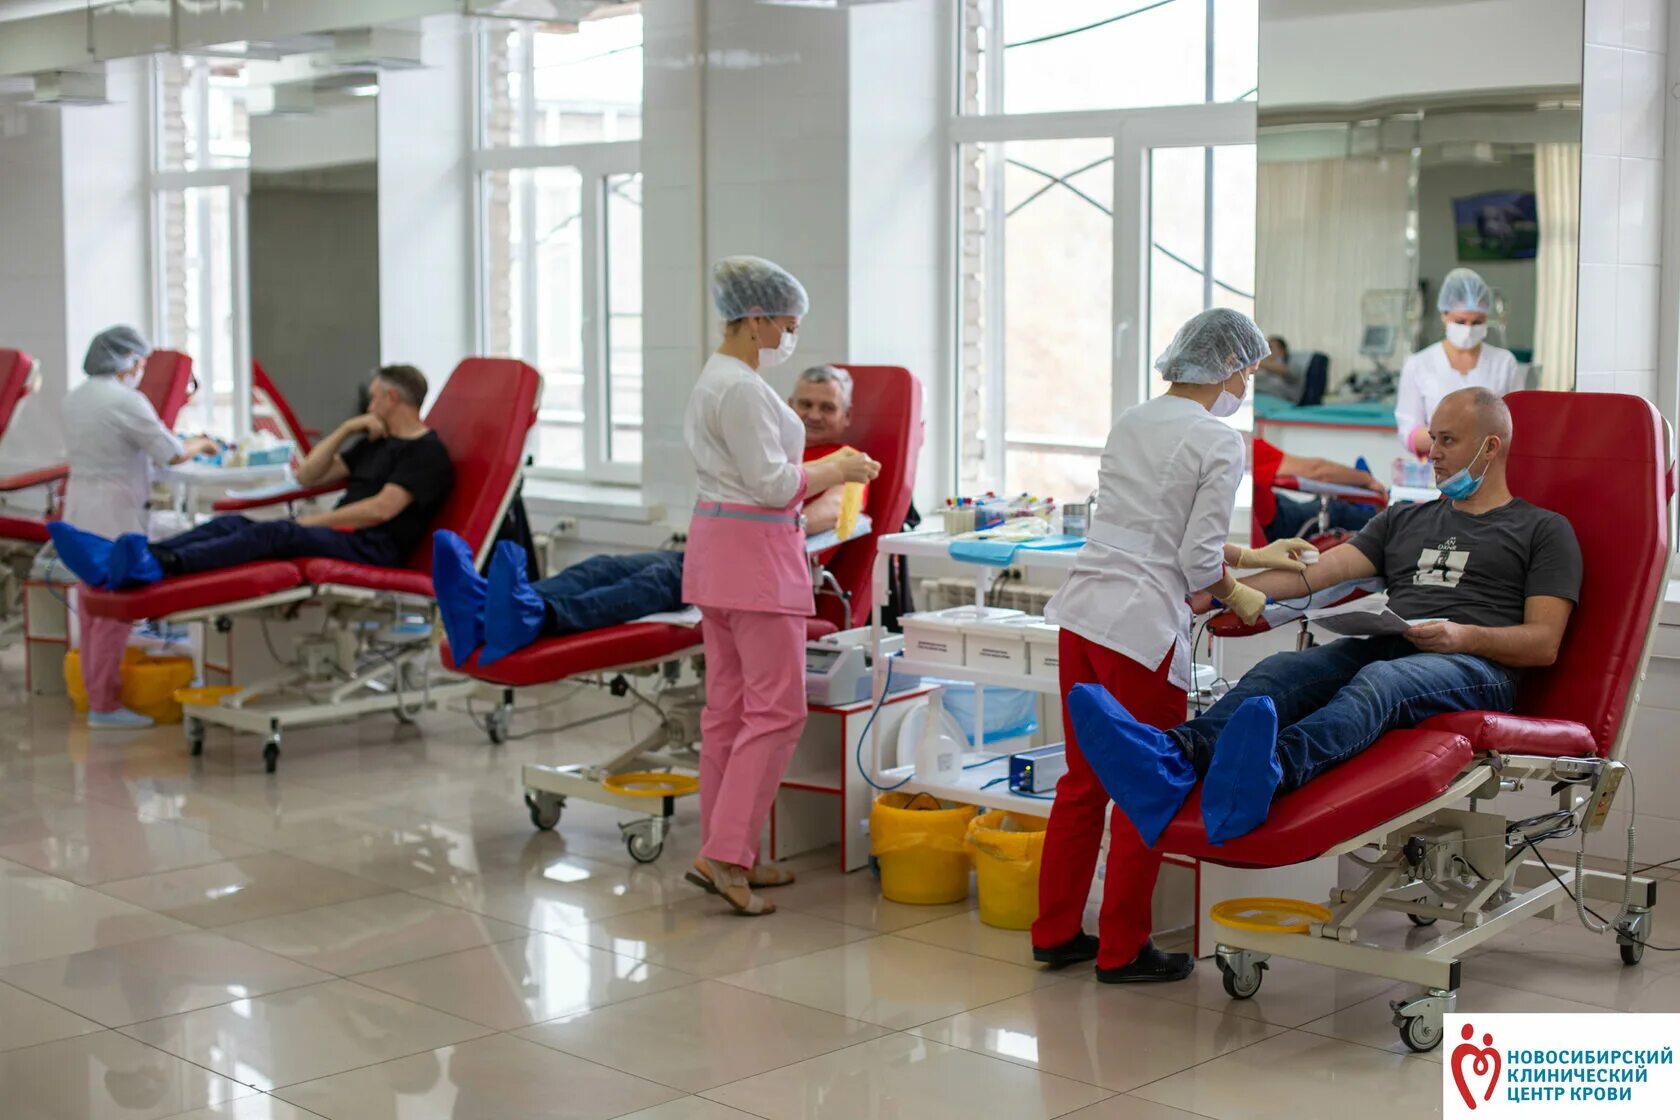 Отделы центра крови. Новосибирский клинический центр крови Новосибирск. Центр донорства крови Новосибирск. Новосибирский центр крови внутри.